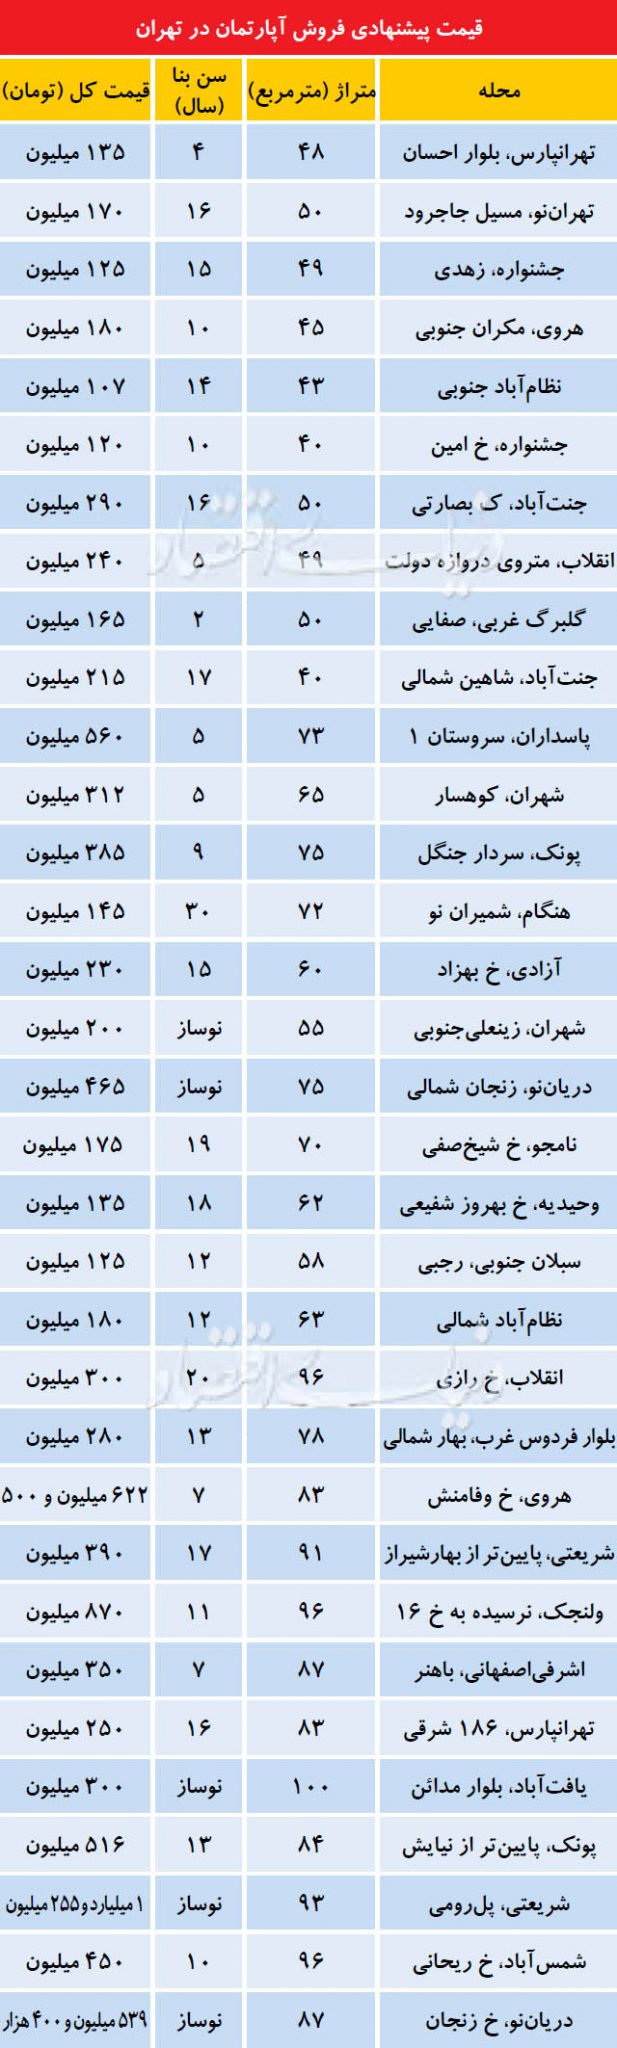 قیمت روز آپارتمان میان سال در تهران